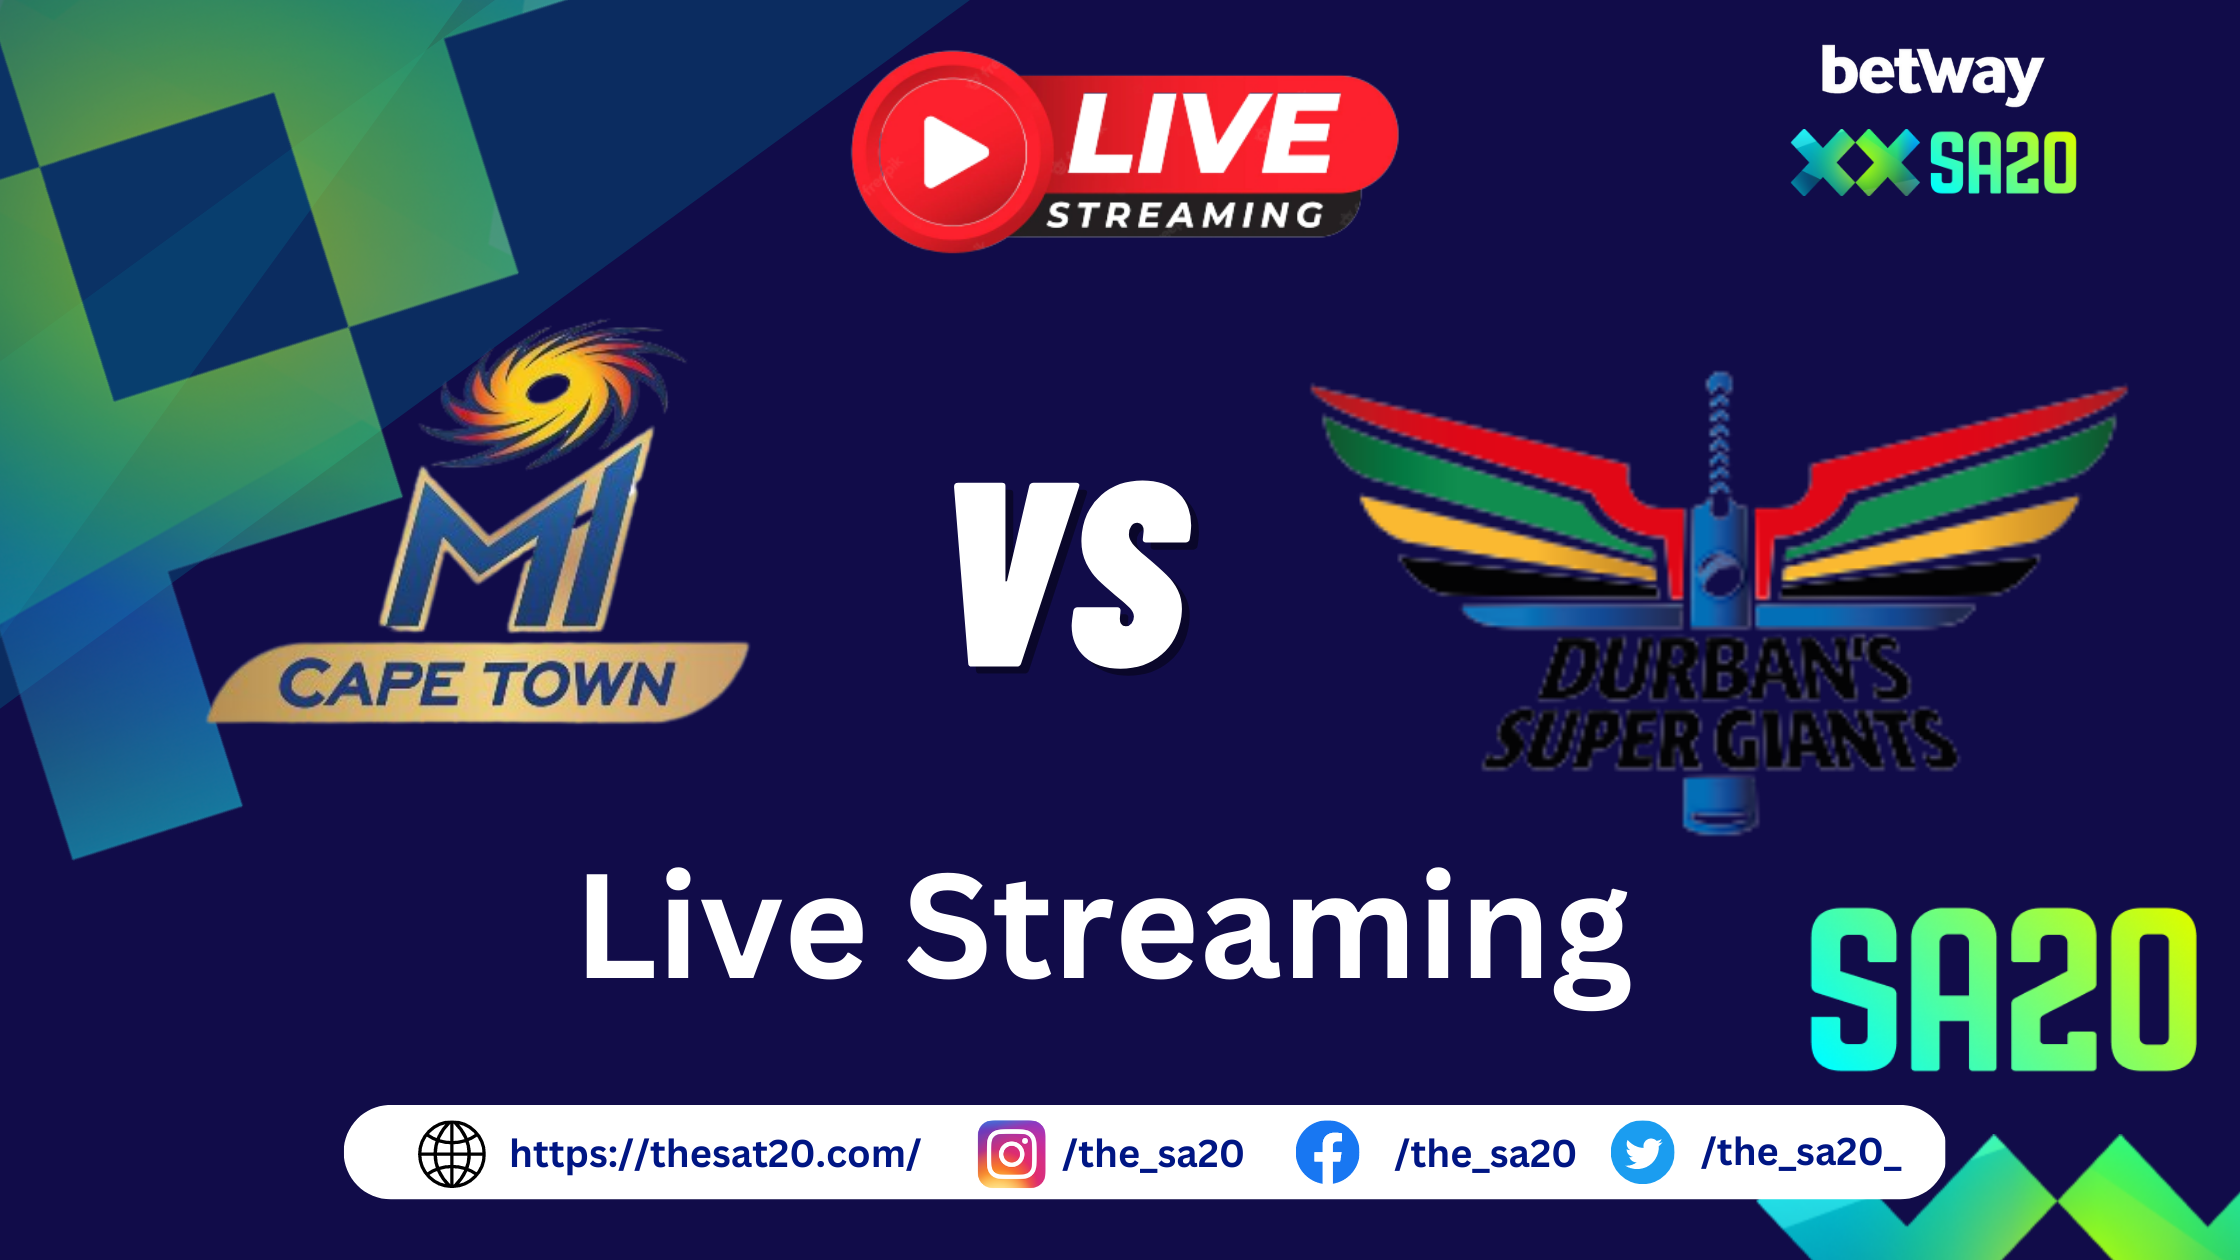 MI Cape Town vs Durban's Super Giants webp